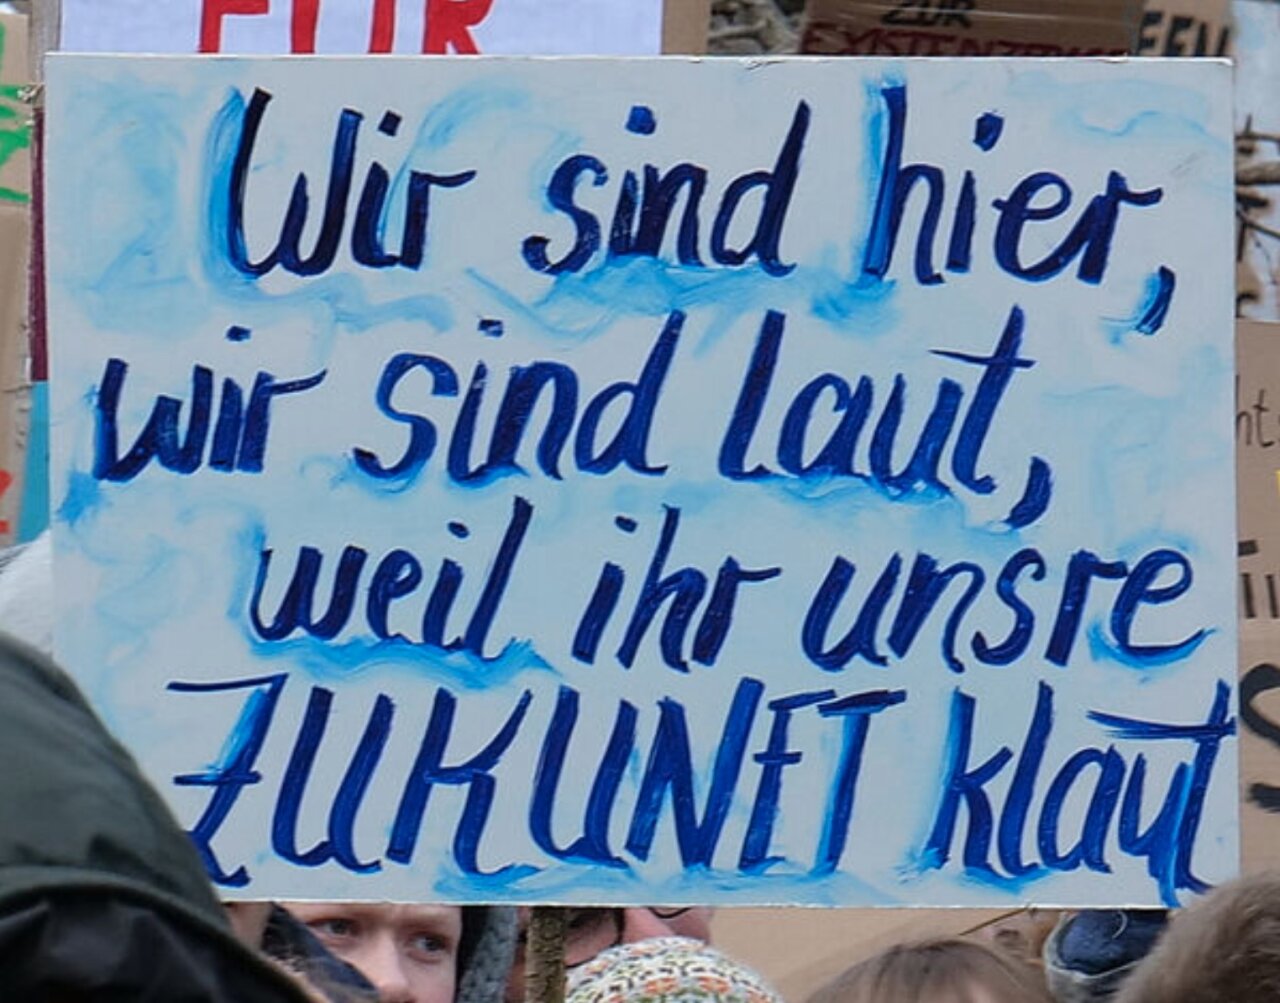 Transparent mit der Aufschrift: Wir sind hier, wir sind laut, weil Ihr uns die Zukunft klaut.